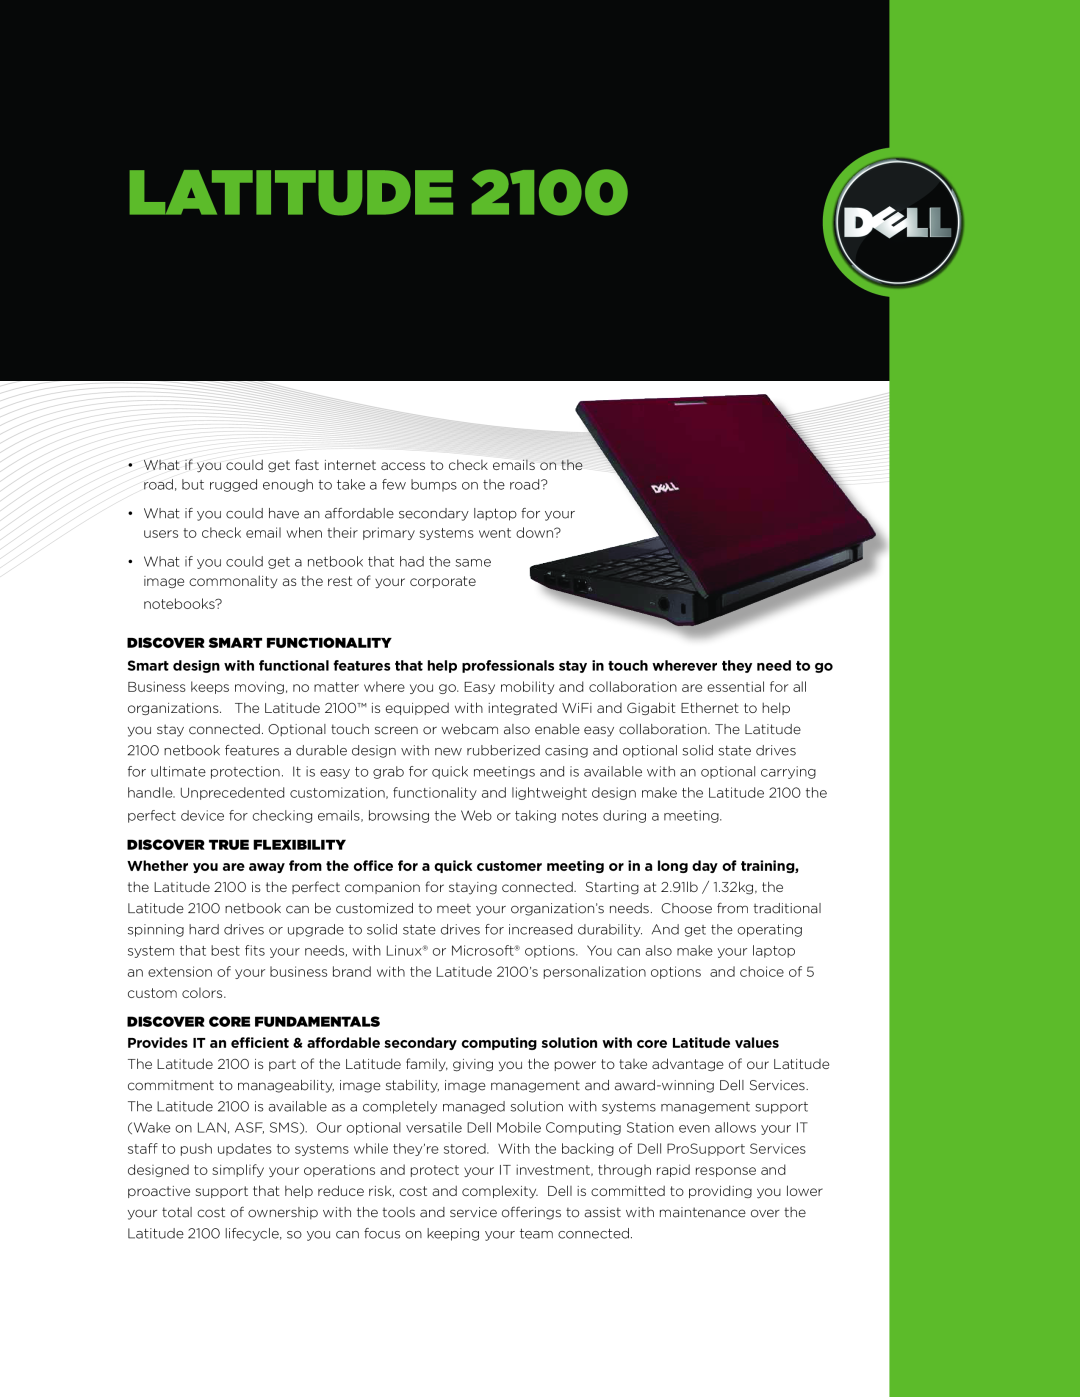 Dell 2100 manual latitude, Discover Smart Functionality, Discover True Flexibility, Discover Core Fundamentals 